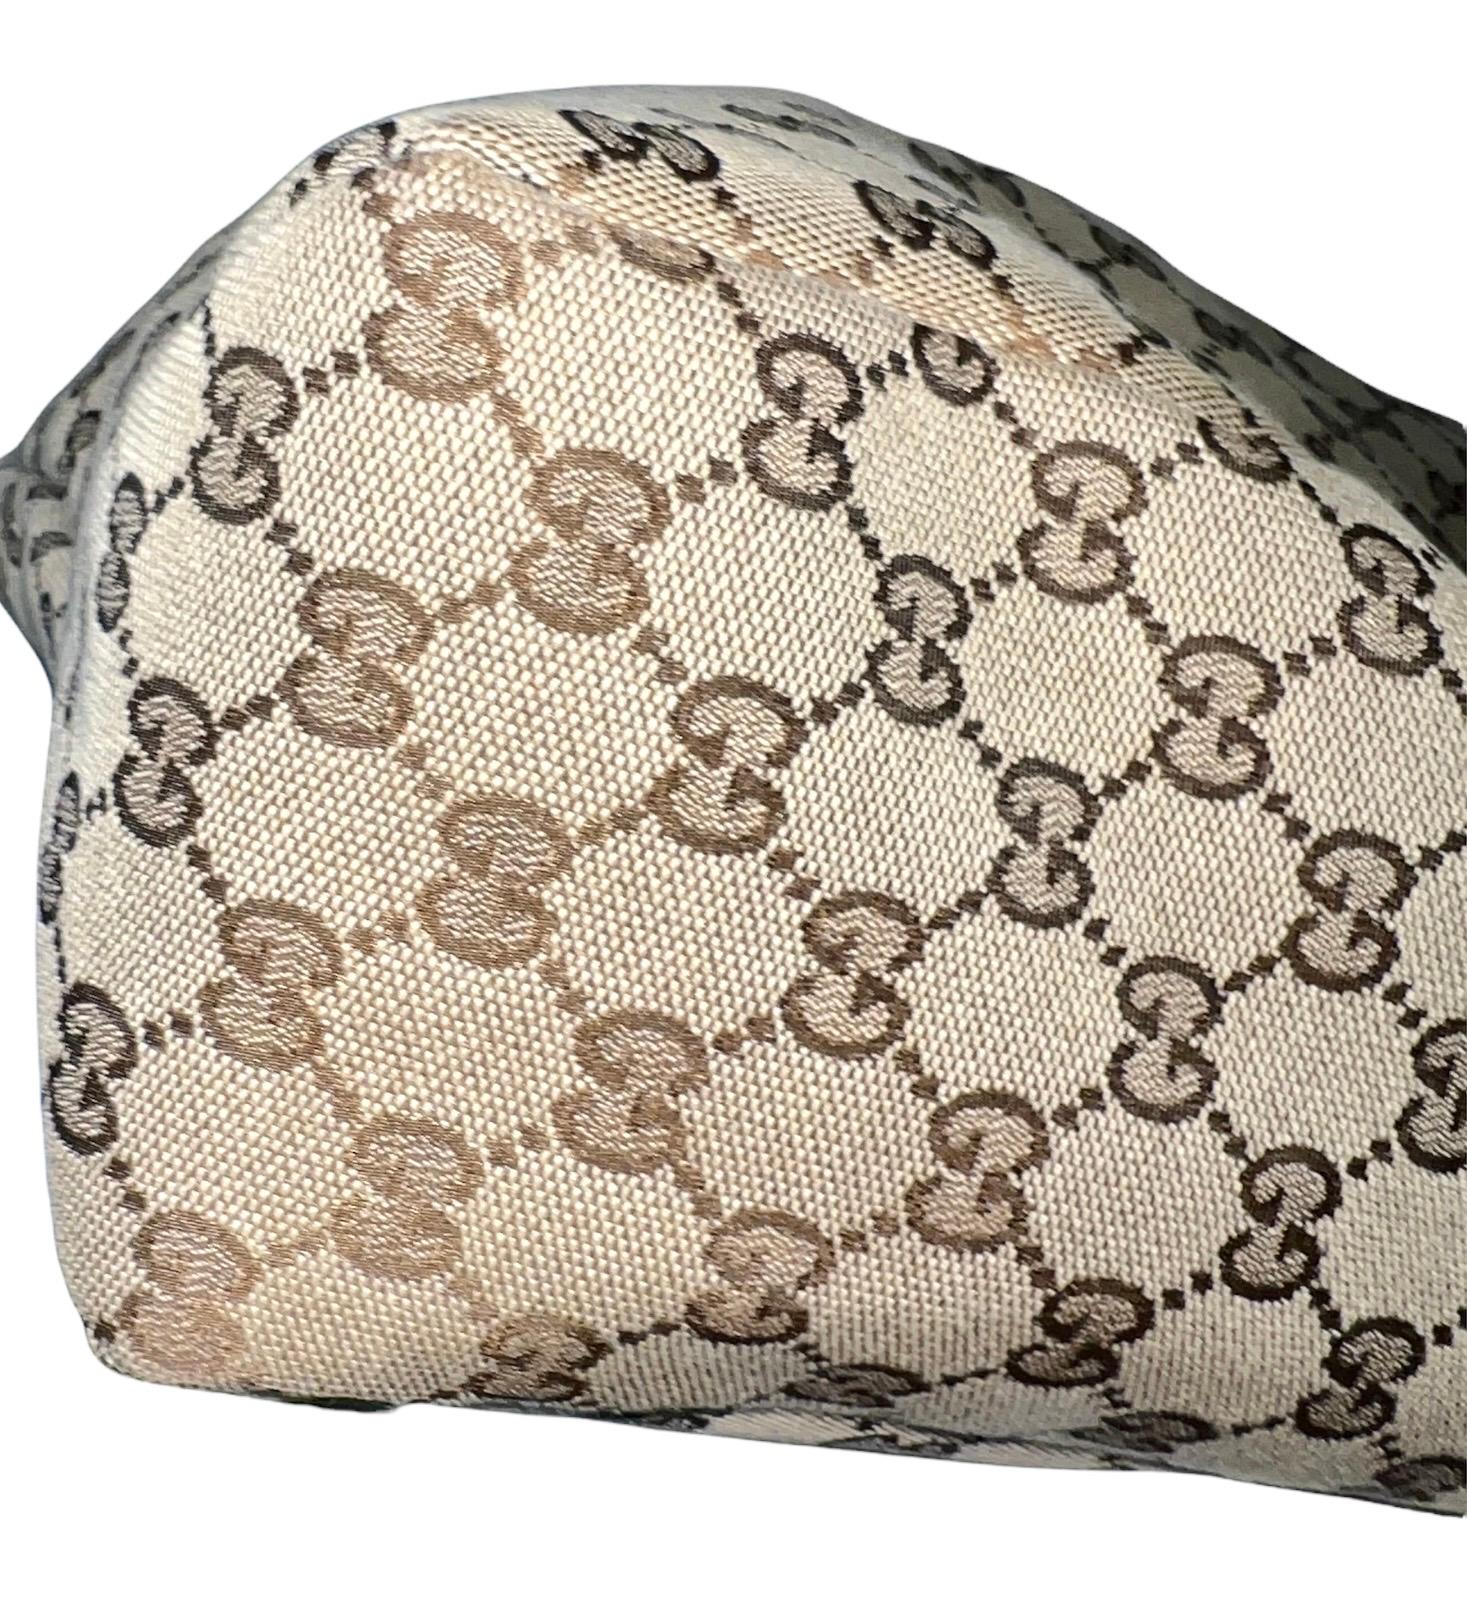 UNWORN Gucci GG Monogram Canvas XL Hobo Bag Satchel with Horsebit Detail 2